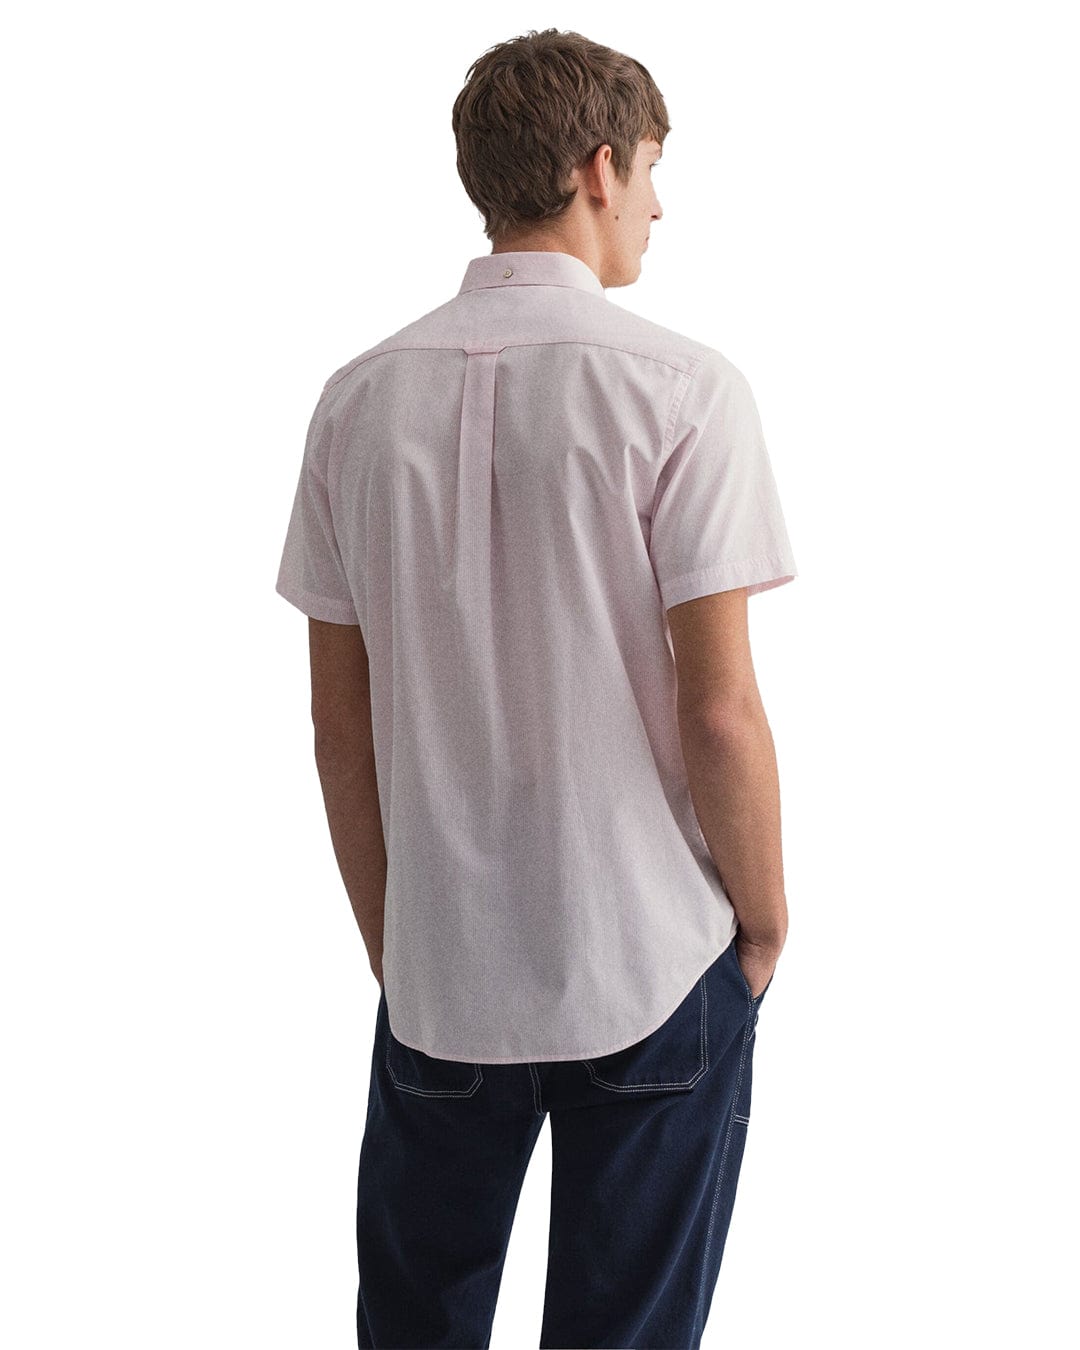 Gant Shirts Gant Regular Fit Short Sleeved Banker Pink Striped Broadcloth Shirt